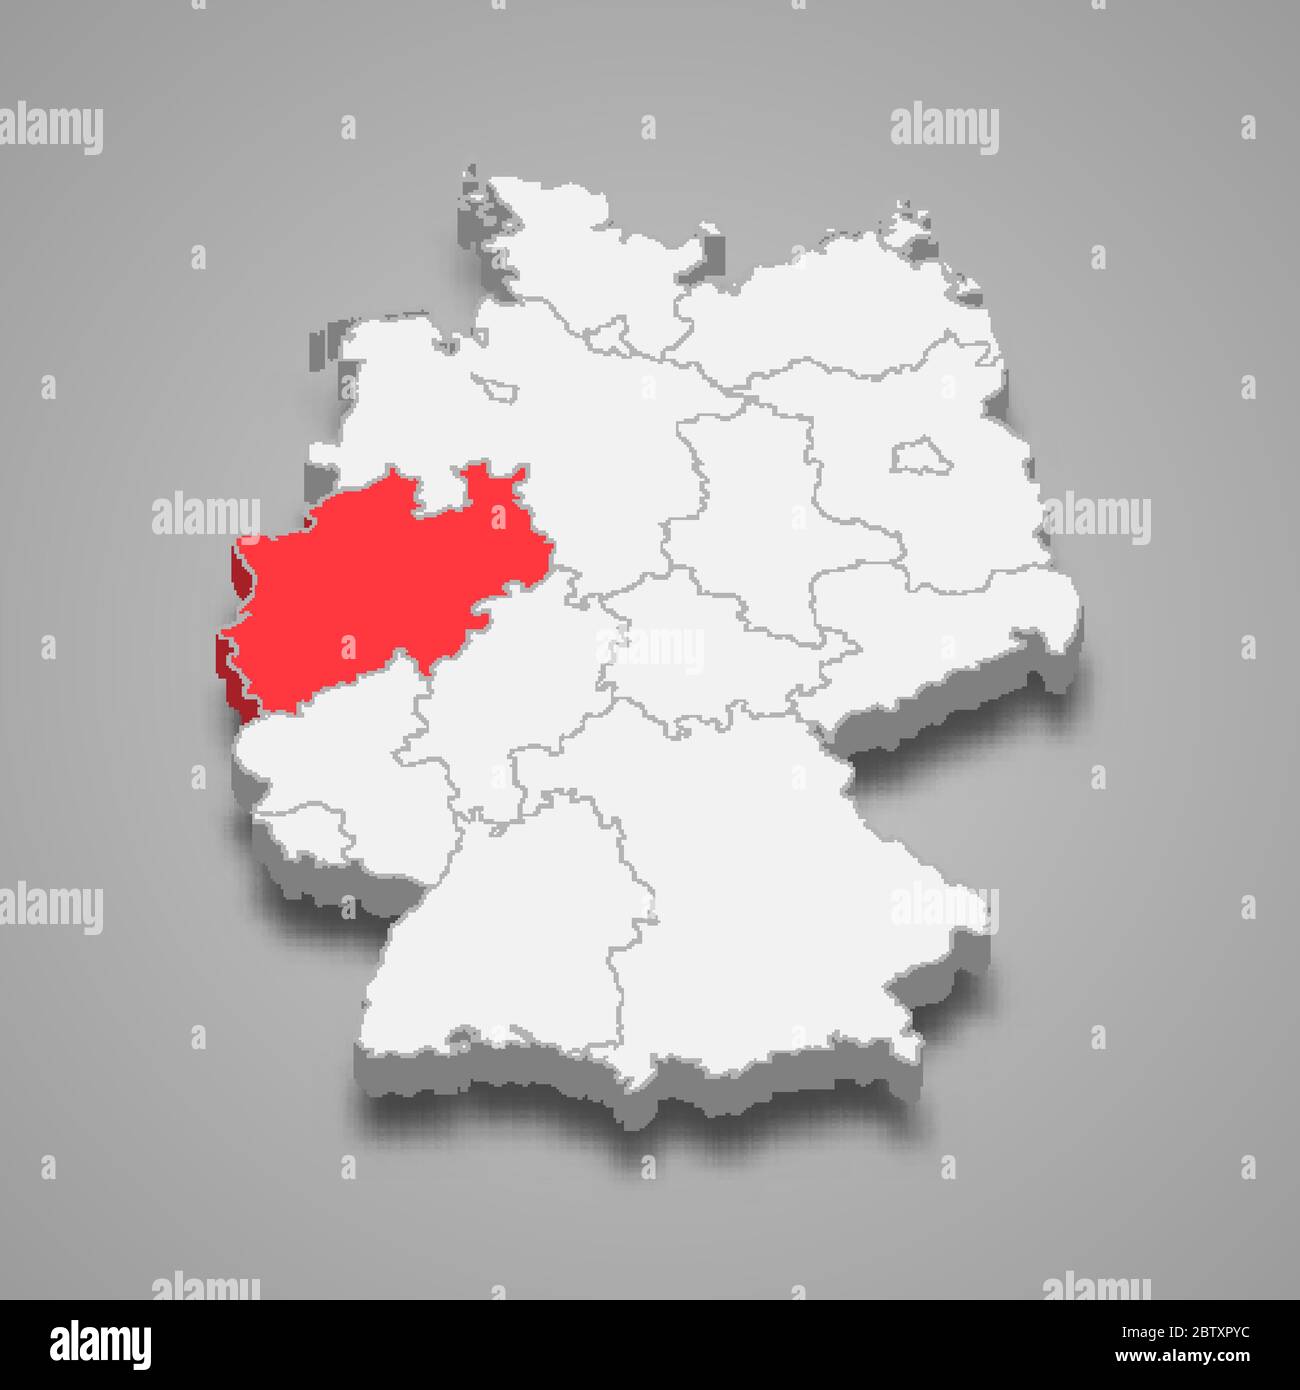 Landesstandort Nordrhein-Westfalen innerhalb Deutschlands 3d-Karte Stock Vektor